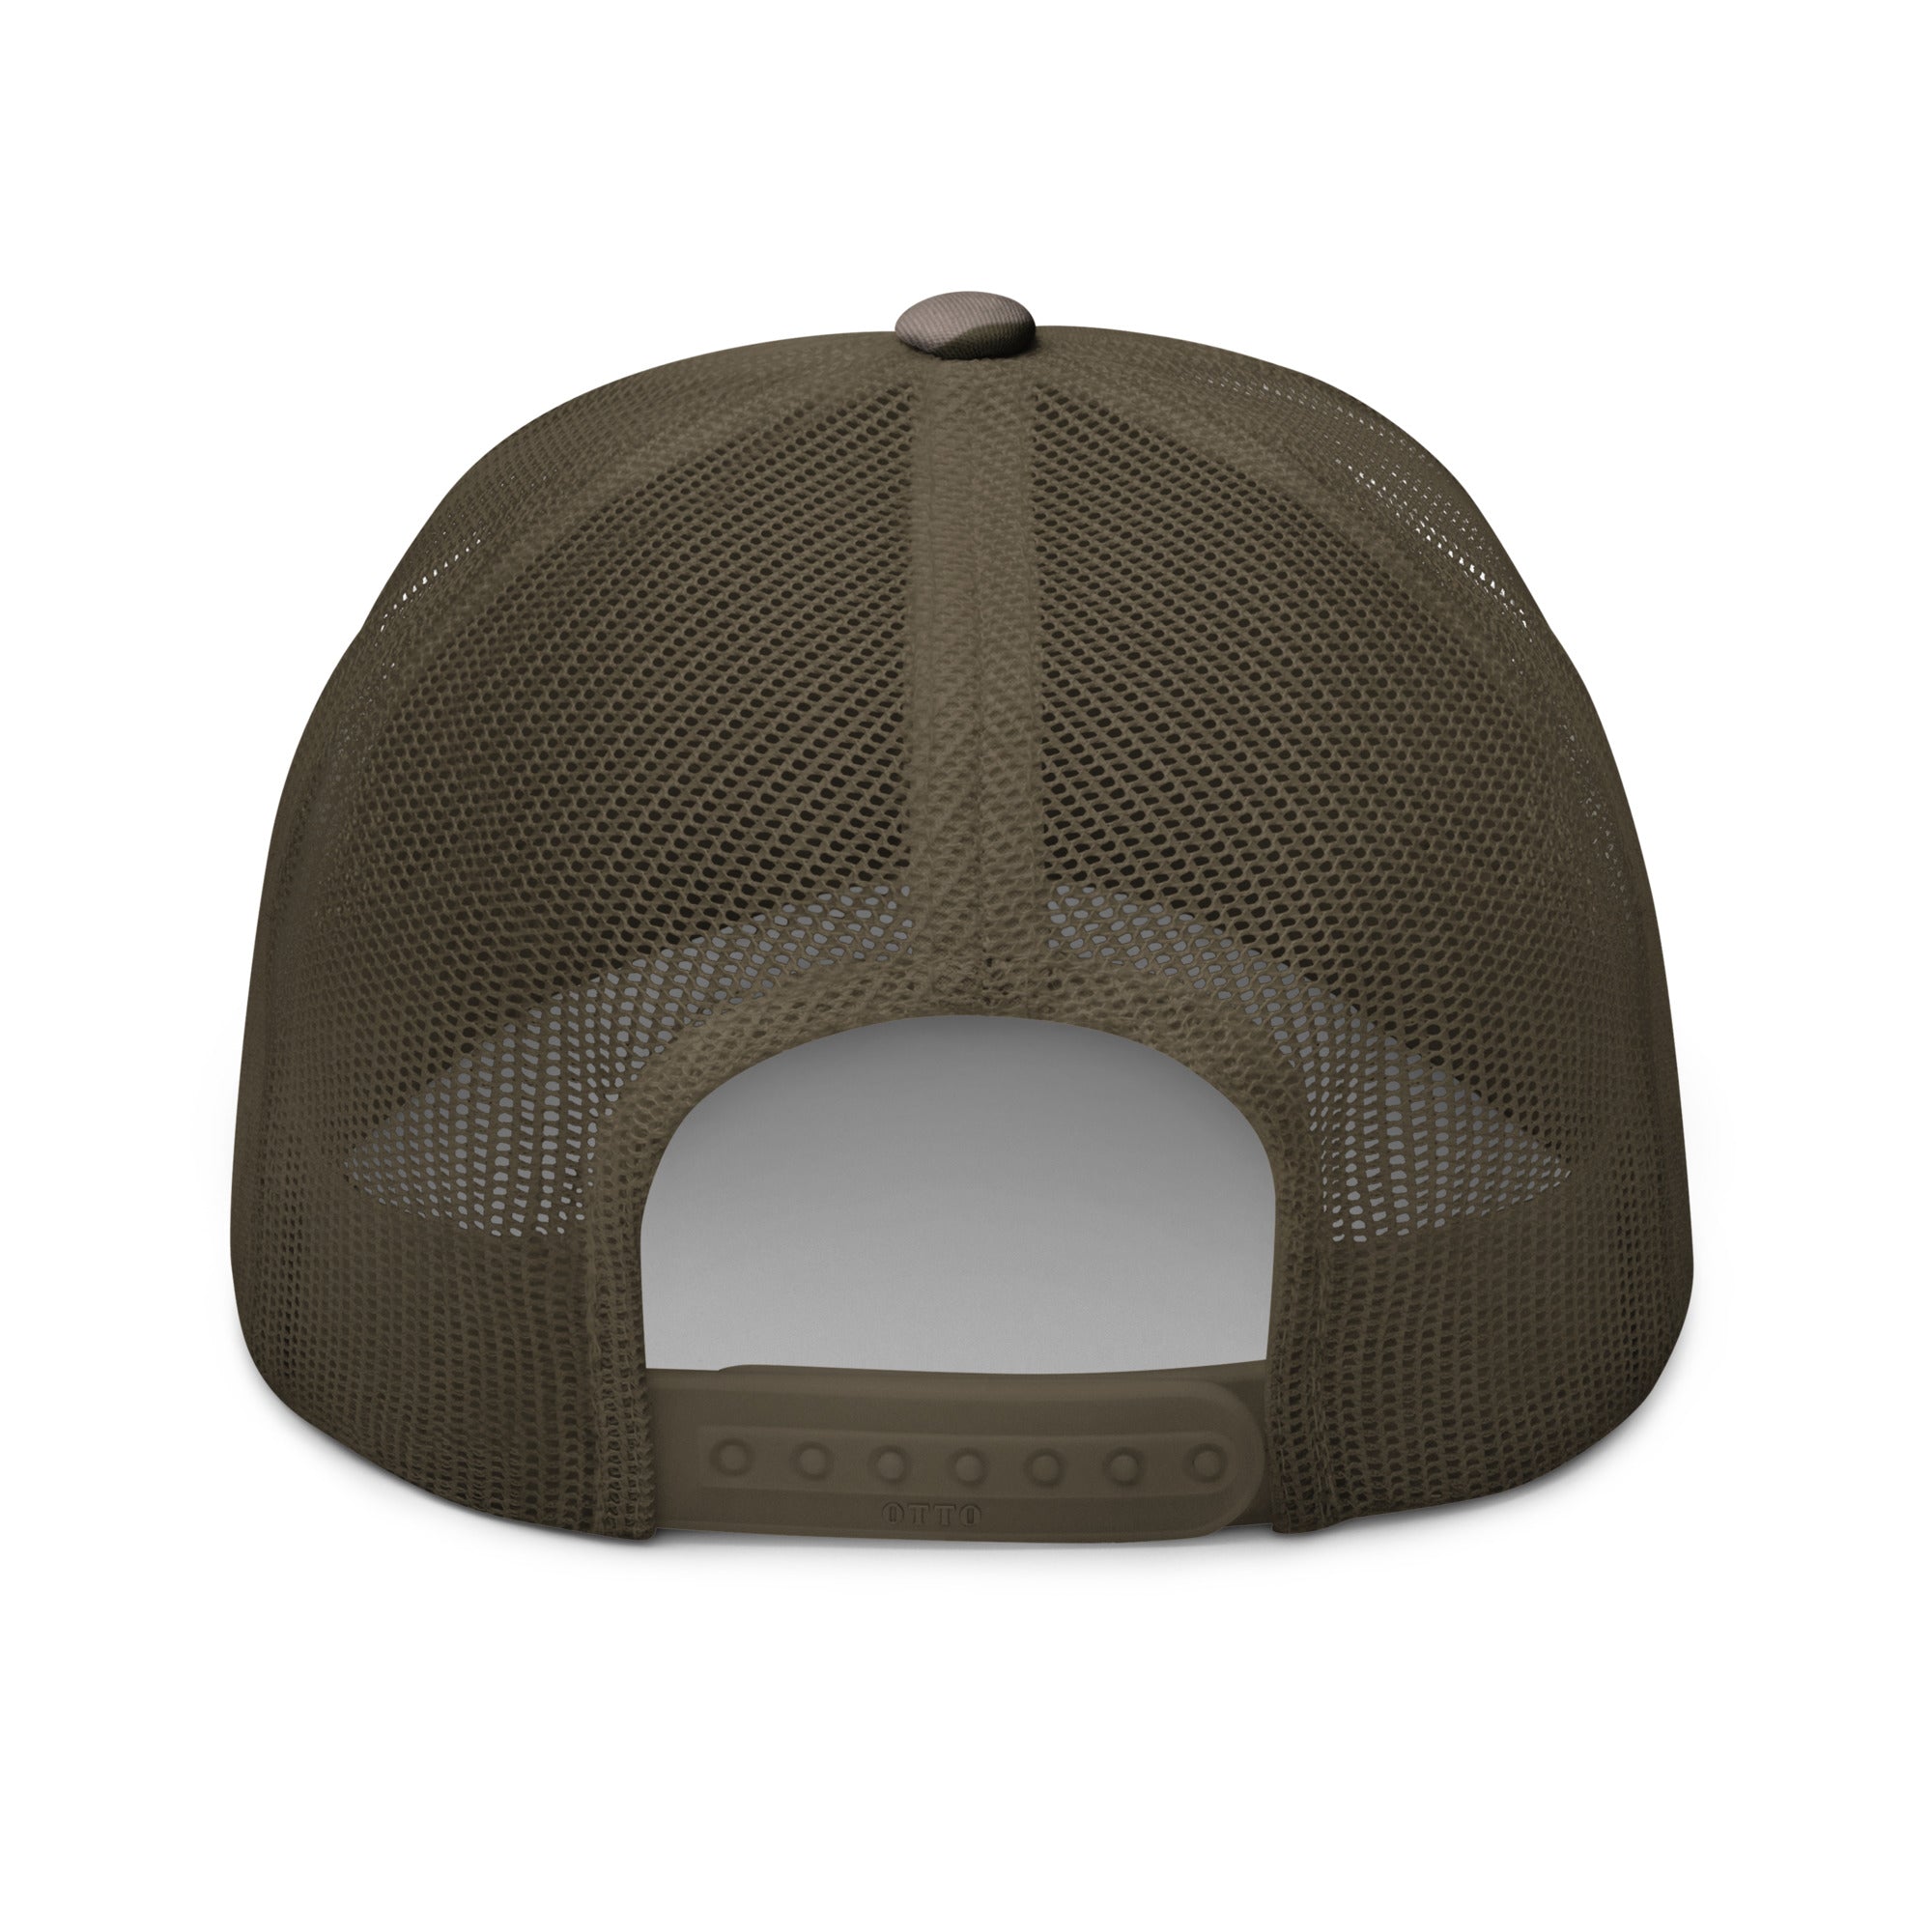 Drifthook Camouflage Trucker Hat - Multi-Terrain